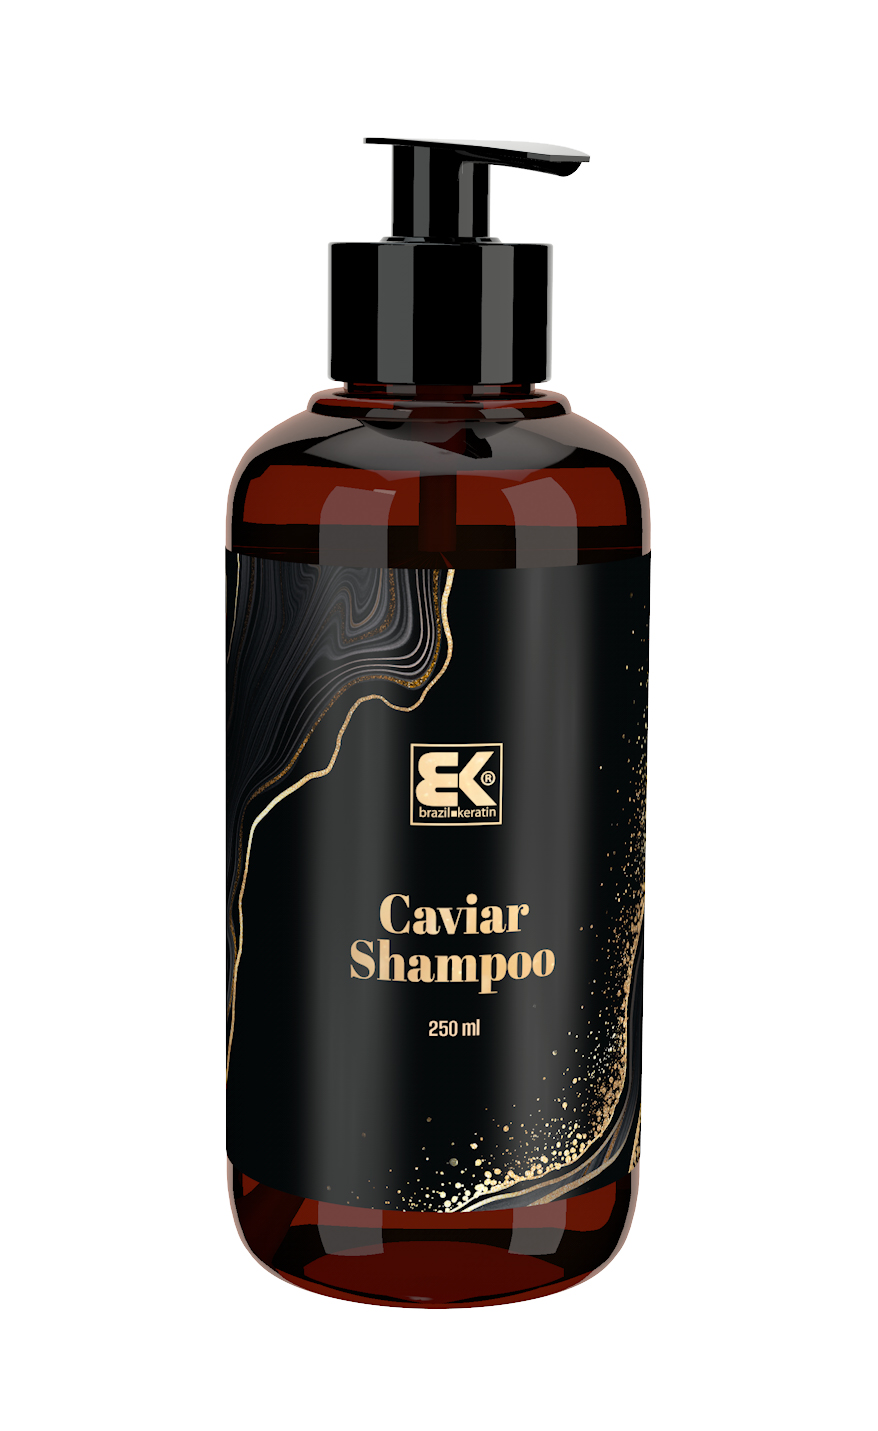 Brazil Keratin Šampón Caviar 250 ml